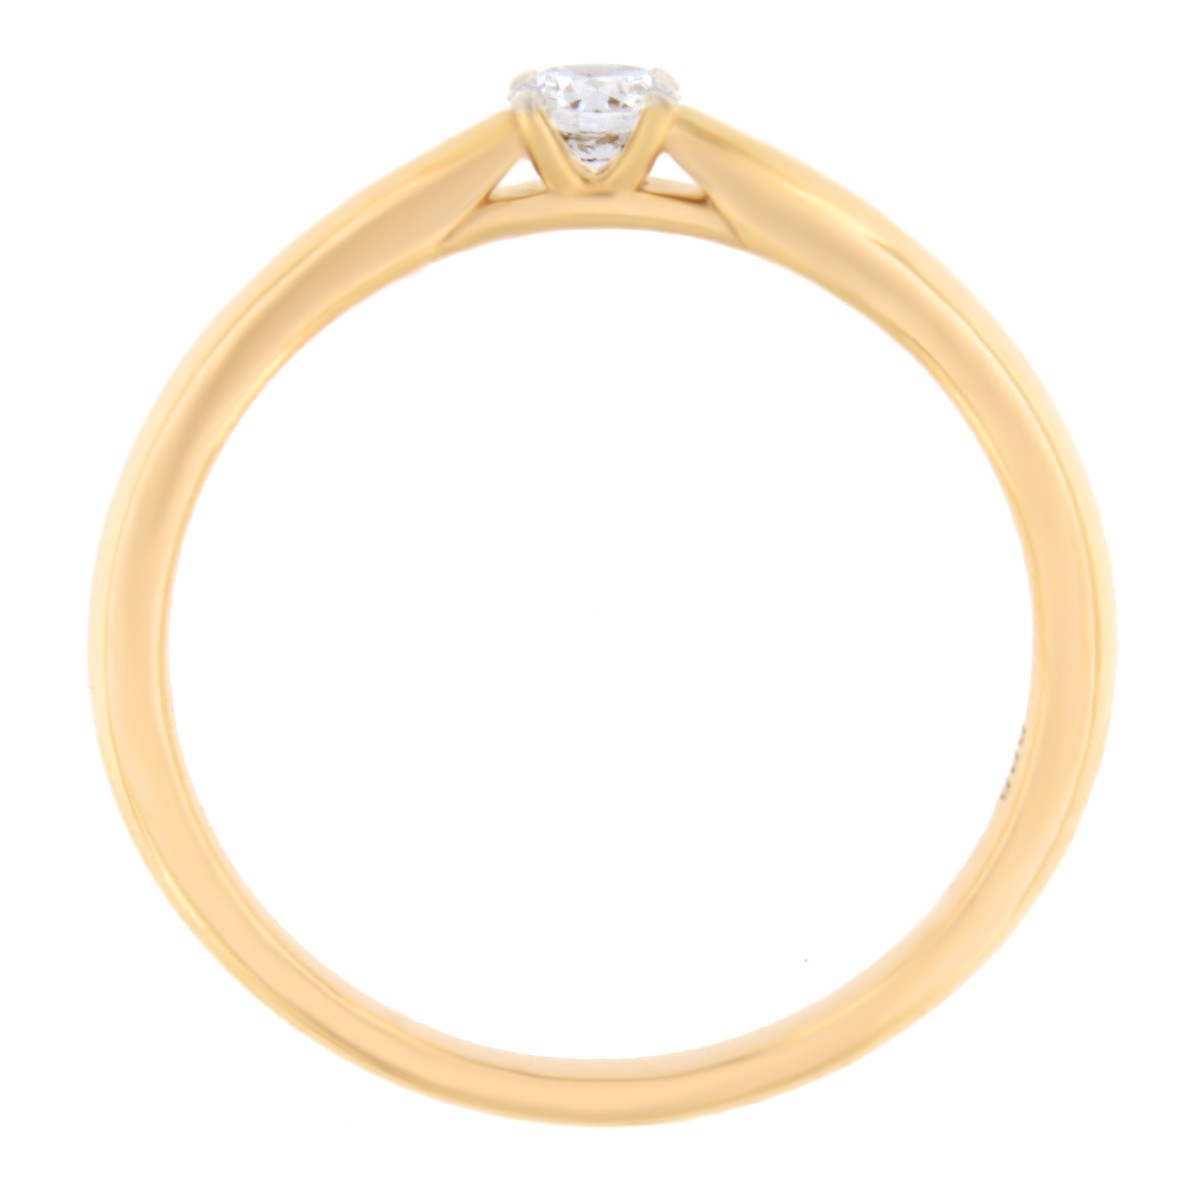 Kullast sõrmus teemantiga 0,14 ct. Kood: 41ae